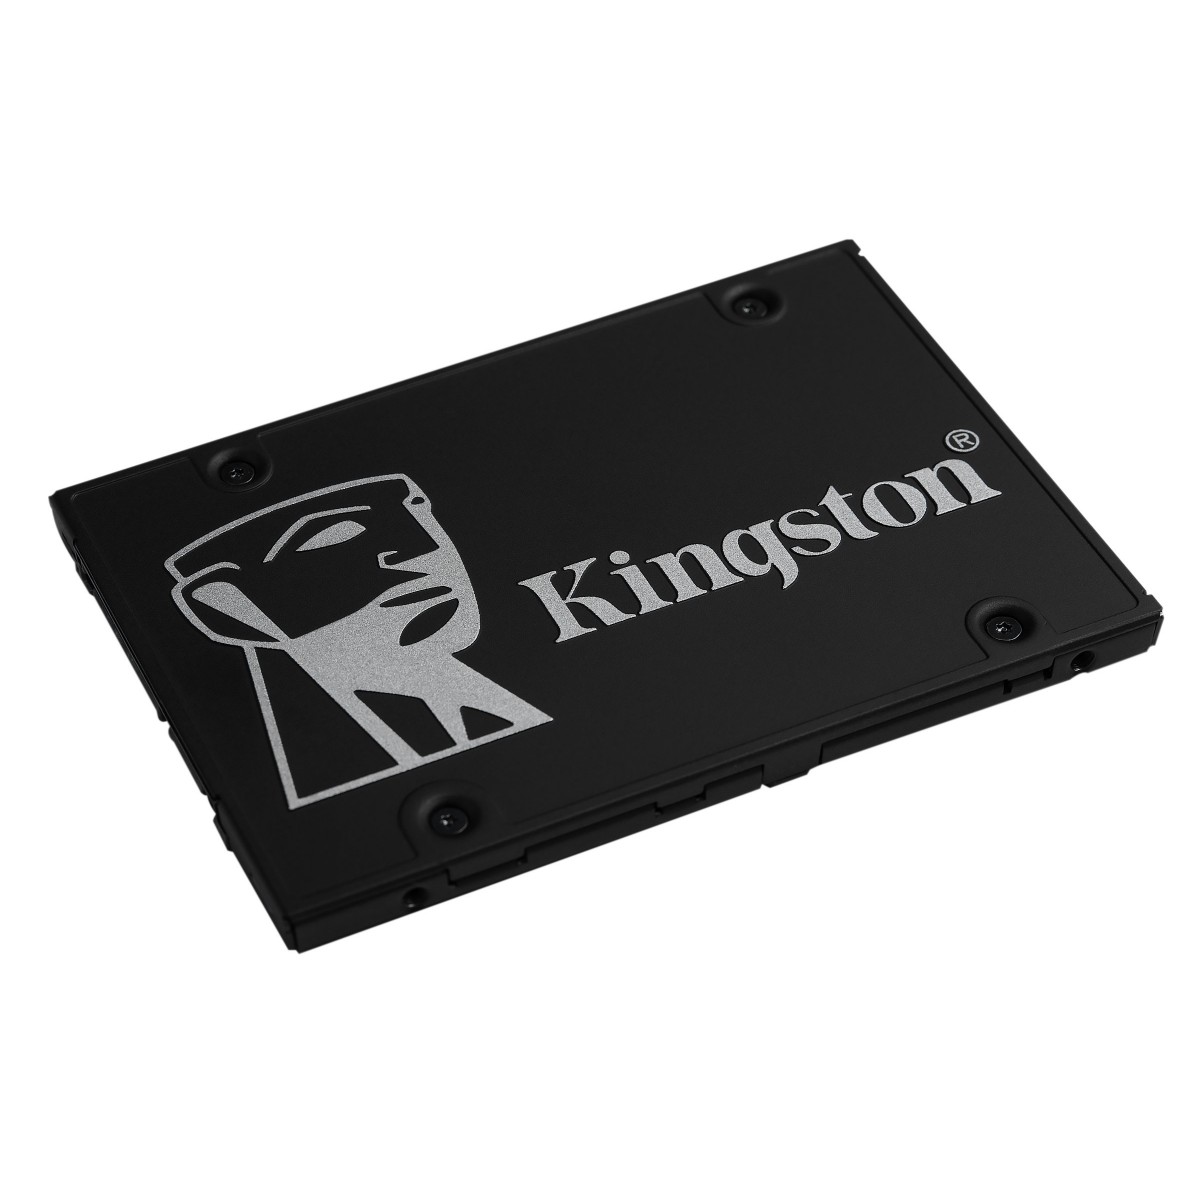 SSD Kingston KC600, 512GB, Sata, Leitura 550MB/s e Gravação 520MB/s, SKC600/512G